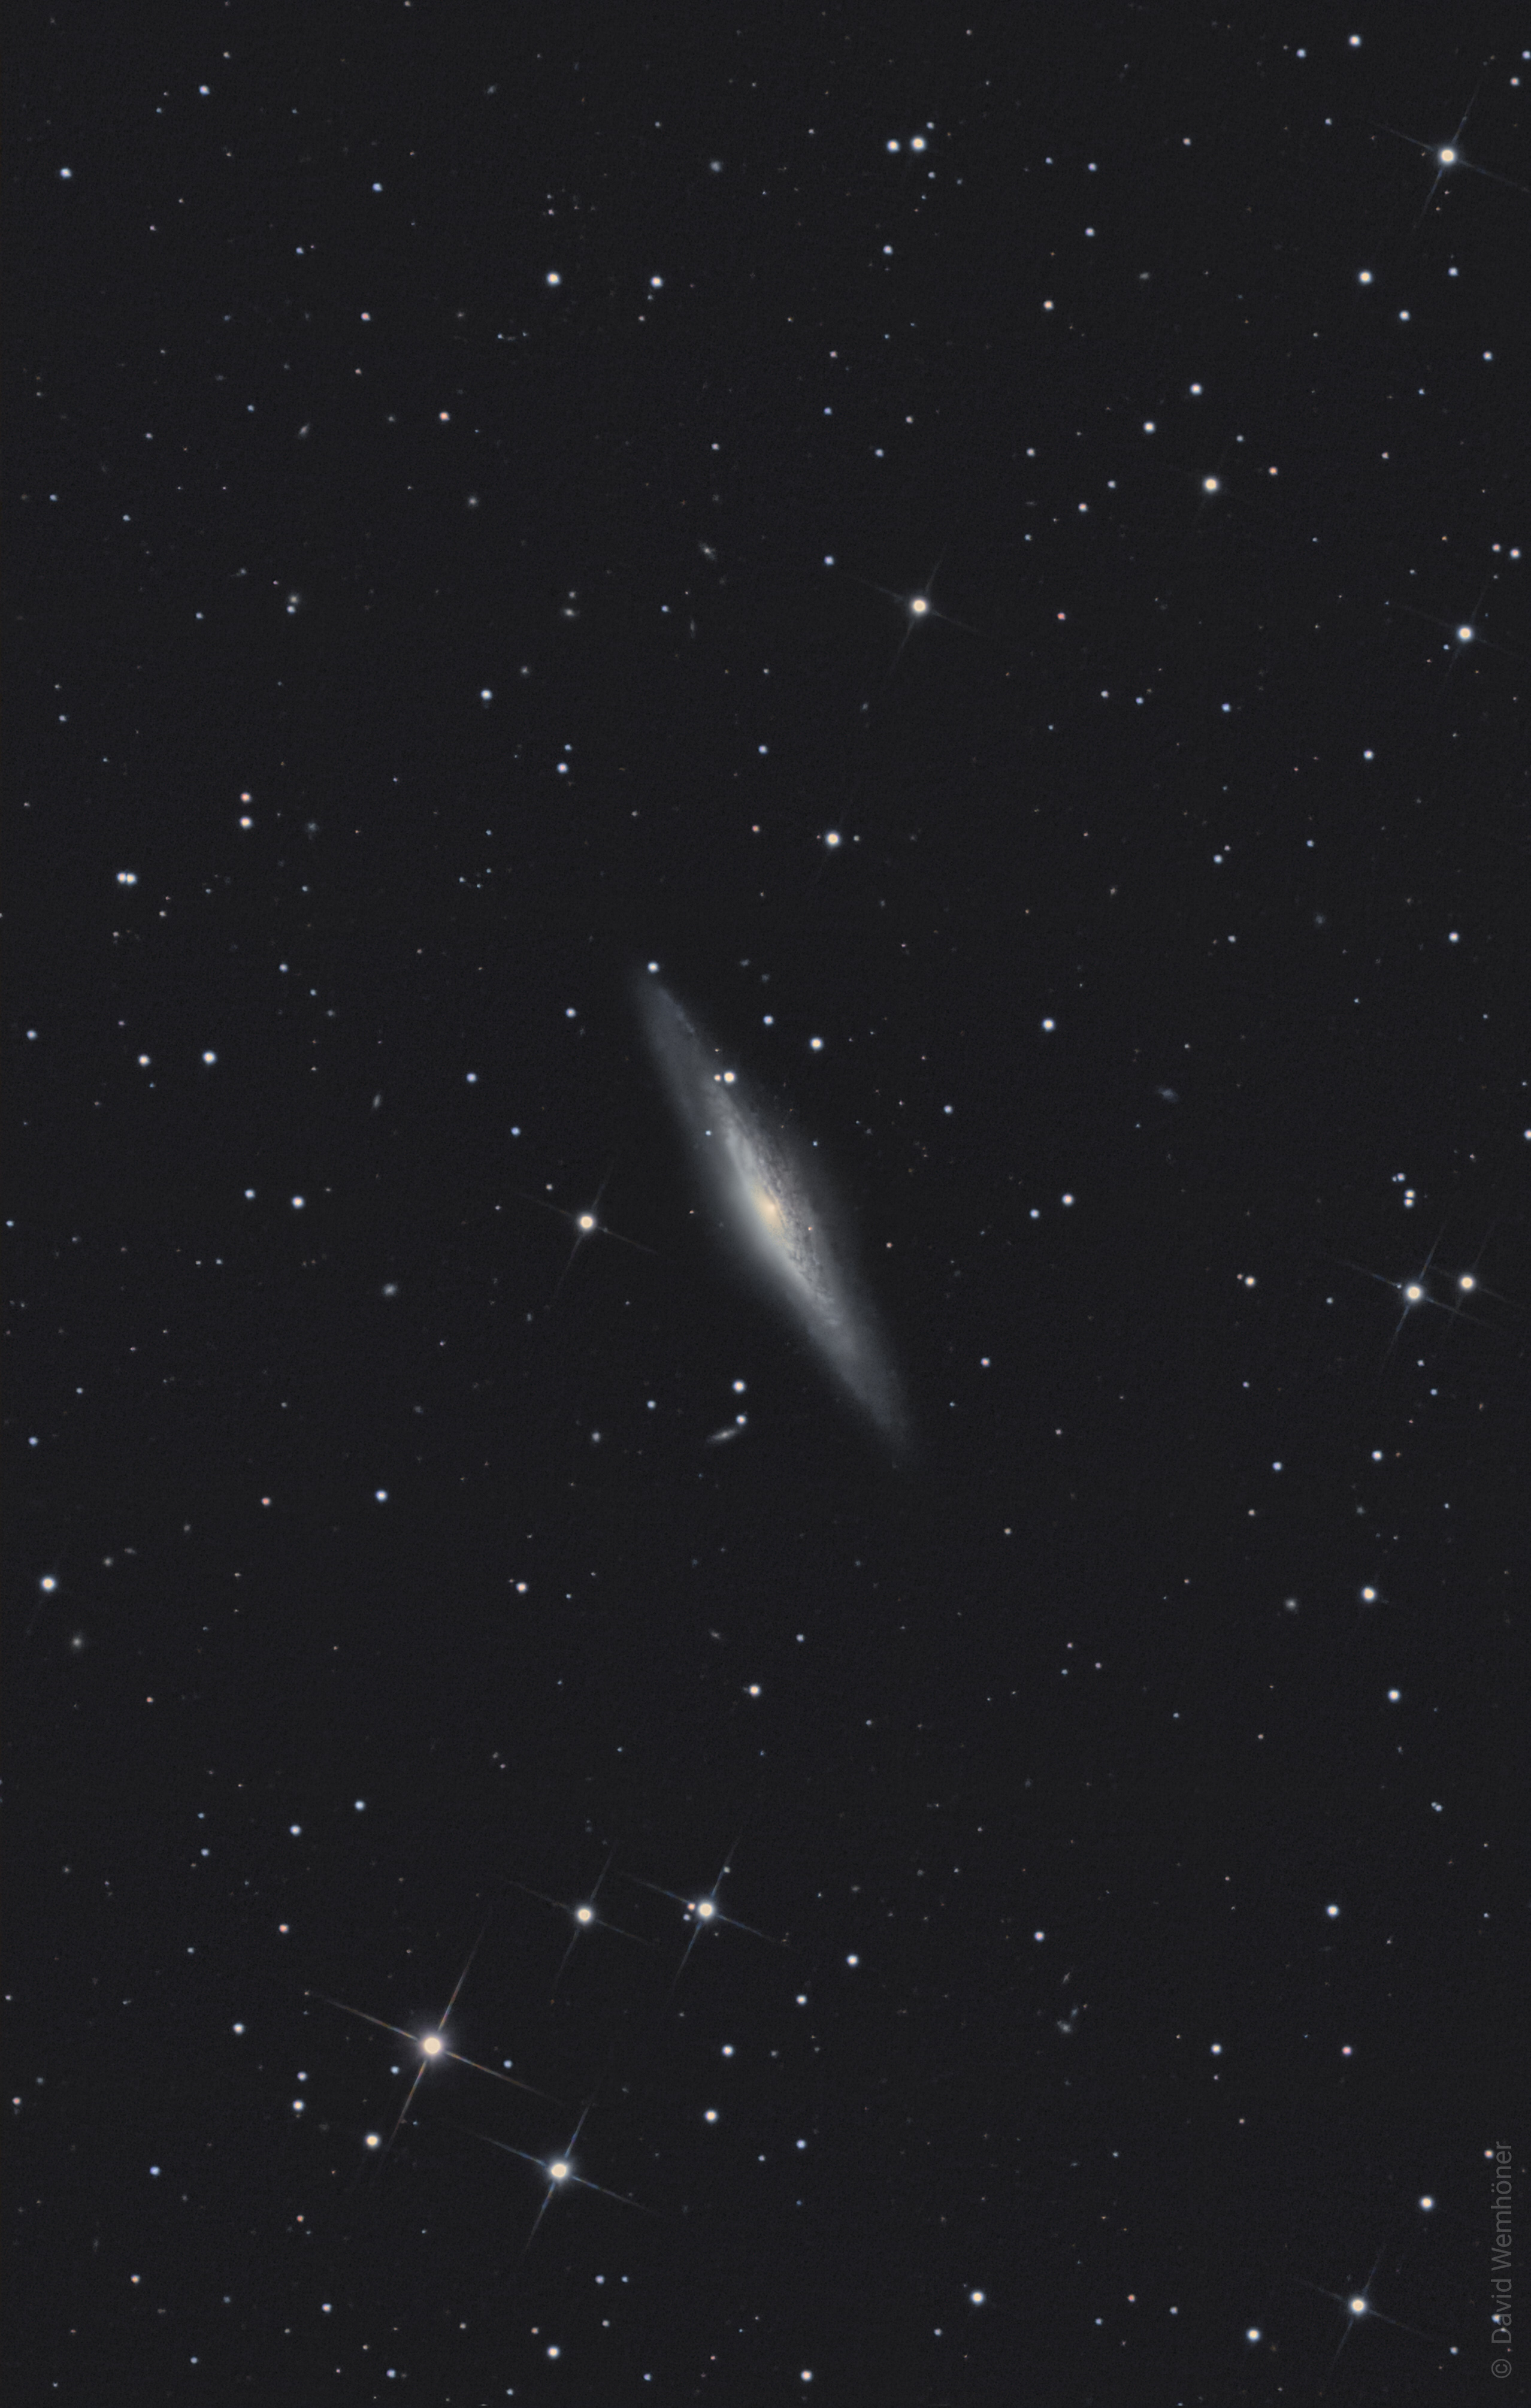 Skyguide 2021-1 - NGC 2683 (Photograph)